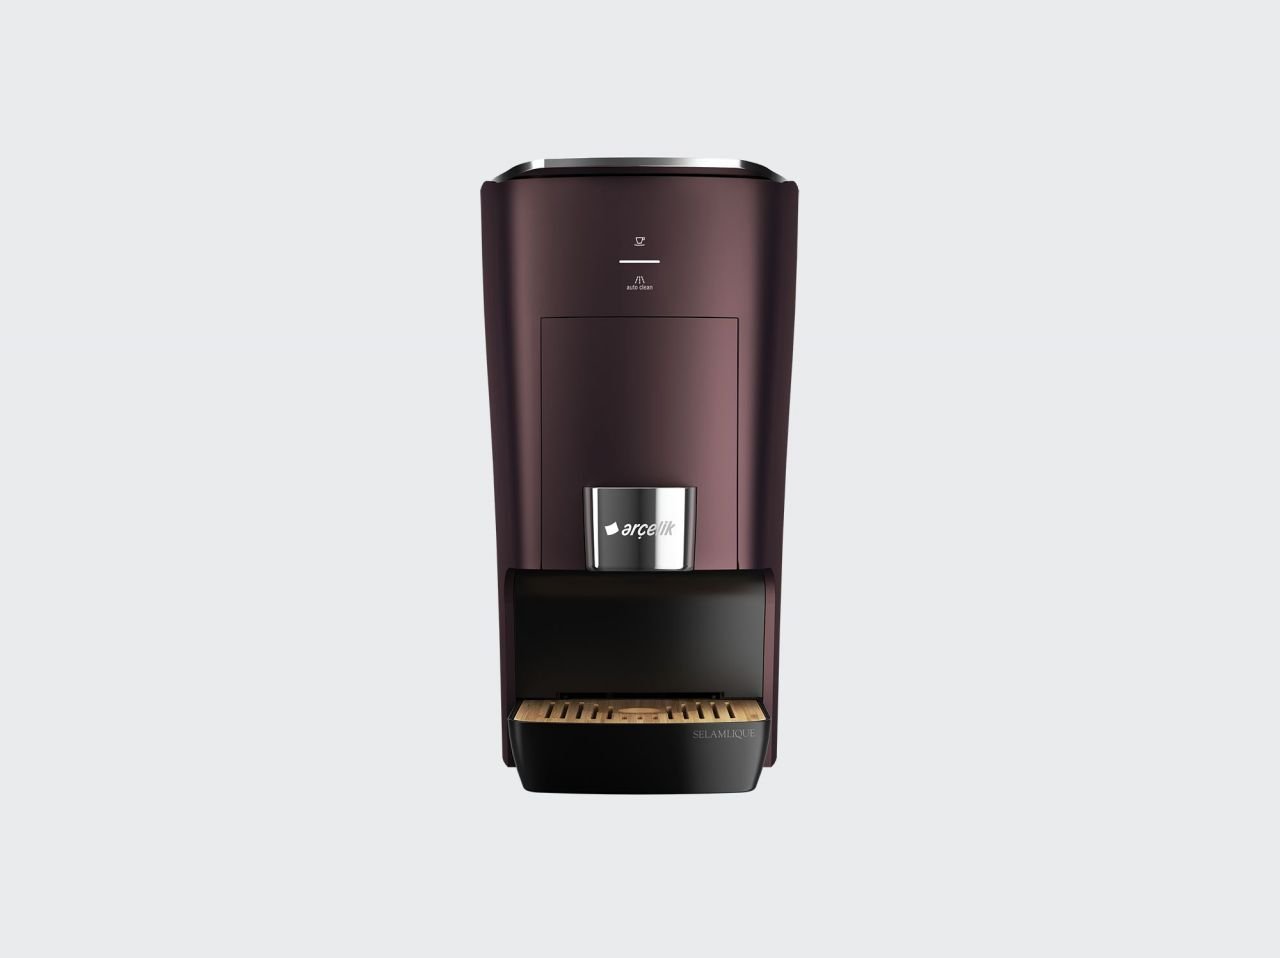 Arçelik K 3500 Selamlique Kapsüllü Türk Kahve Makinası